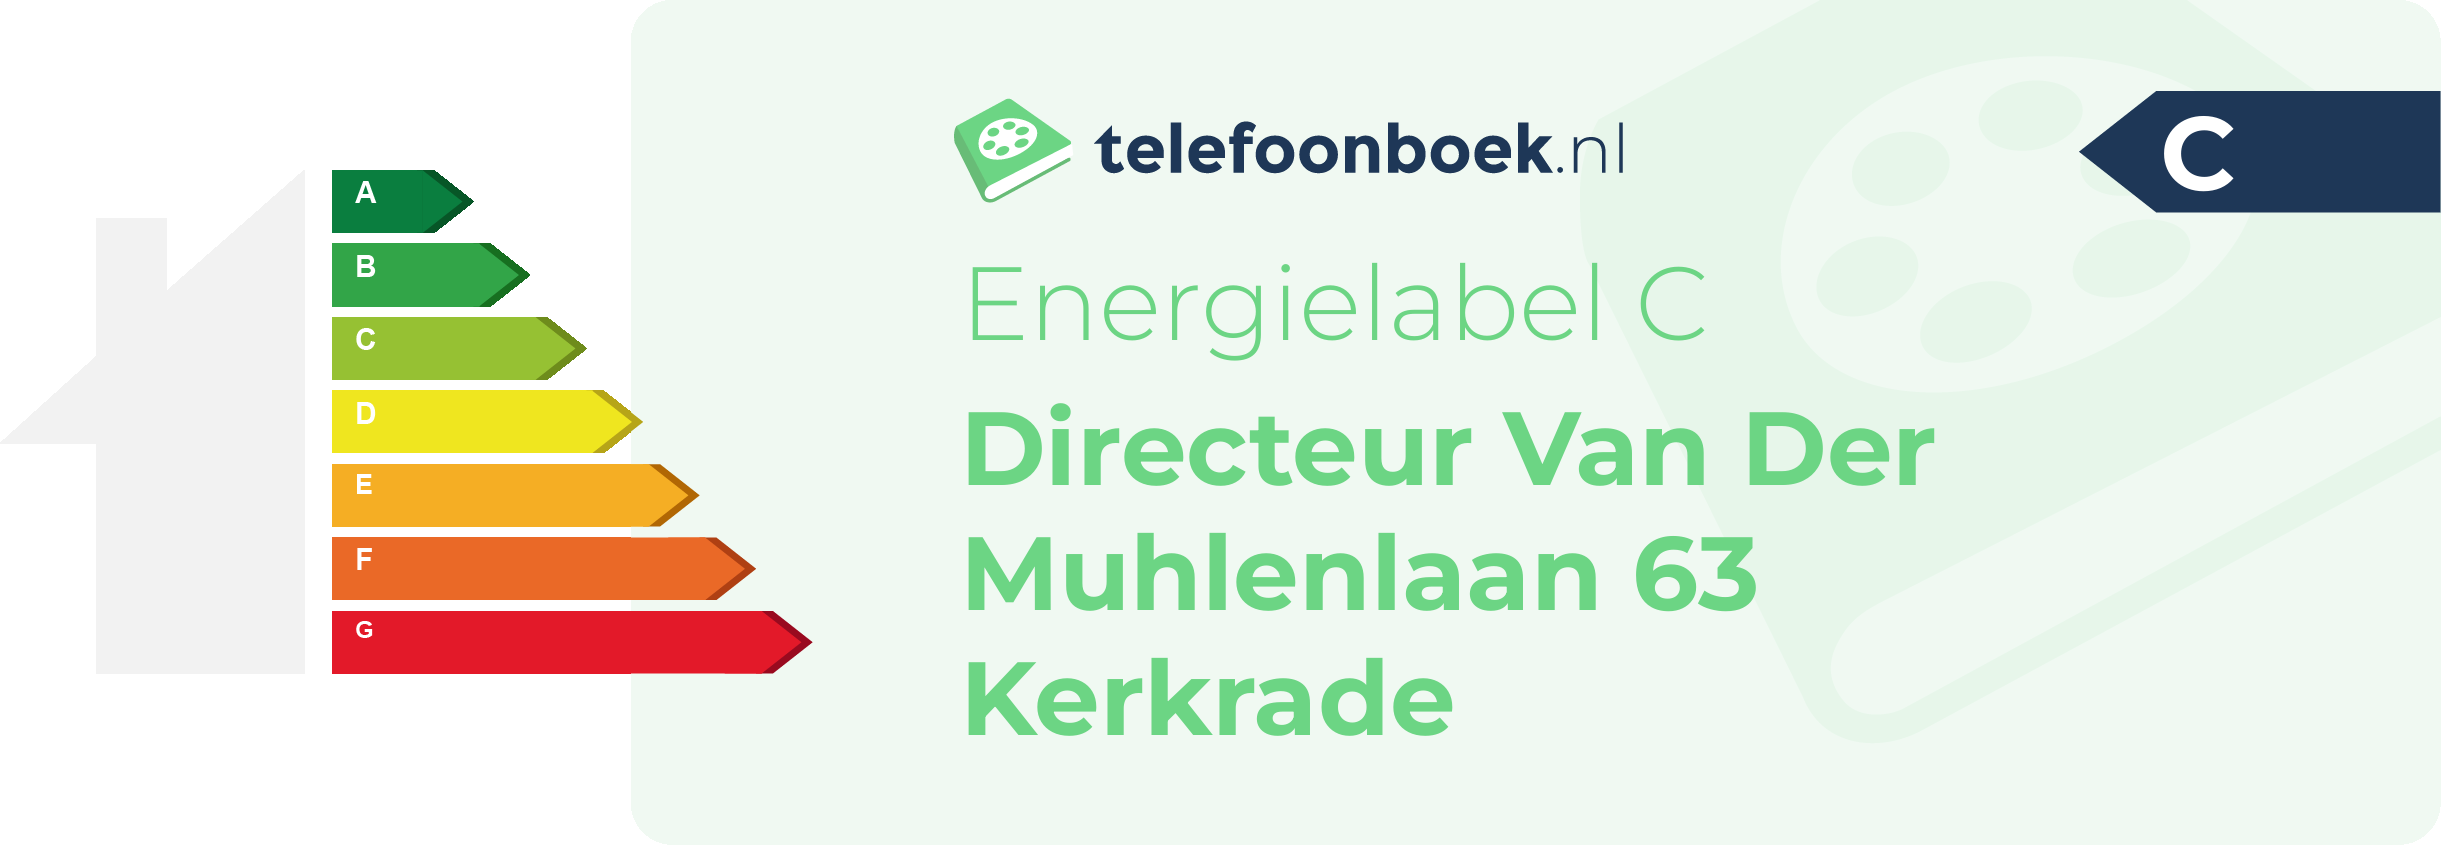 Energielabel Directeur Van Der Muhlenlaan 63 Kerkrade